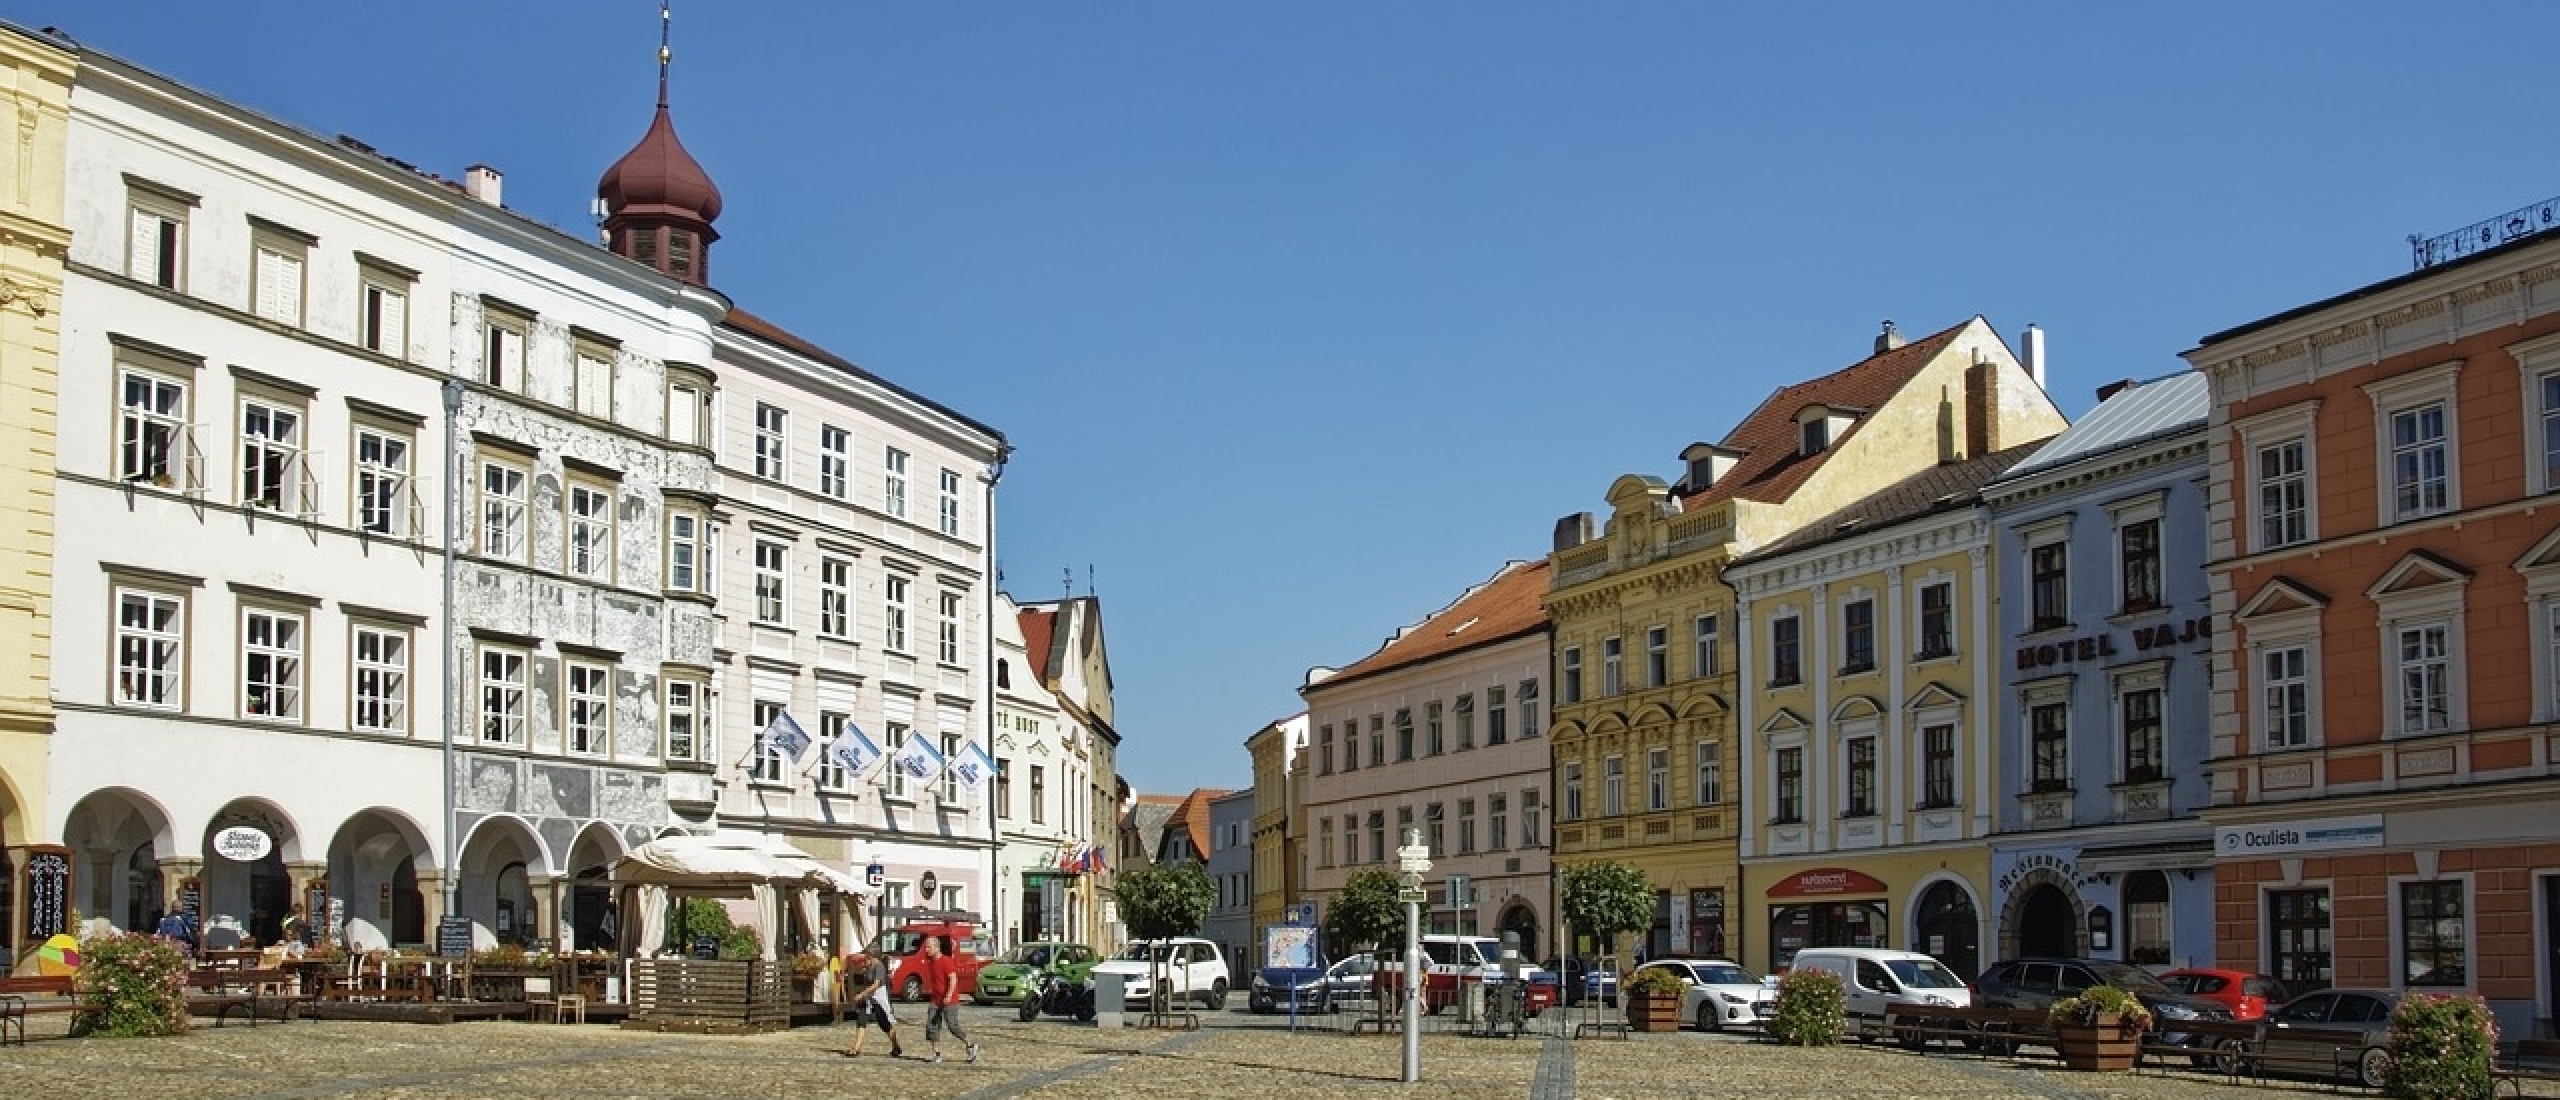 Angeln in der Tschechischen Republik: Region Třeboň